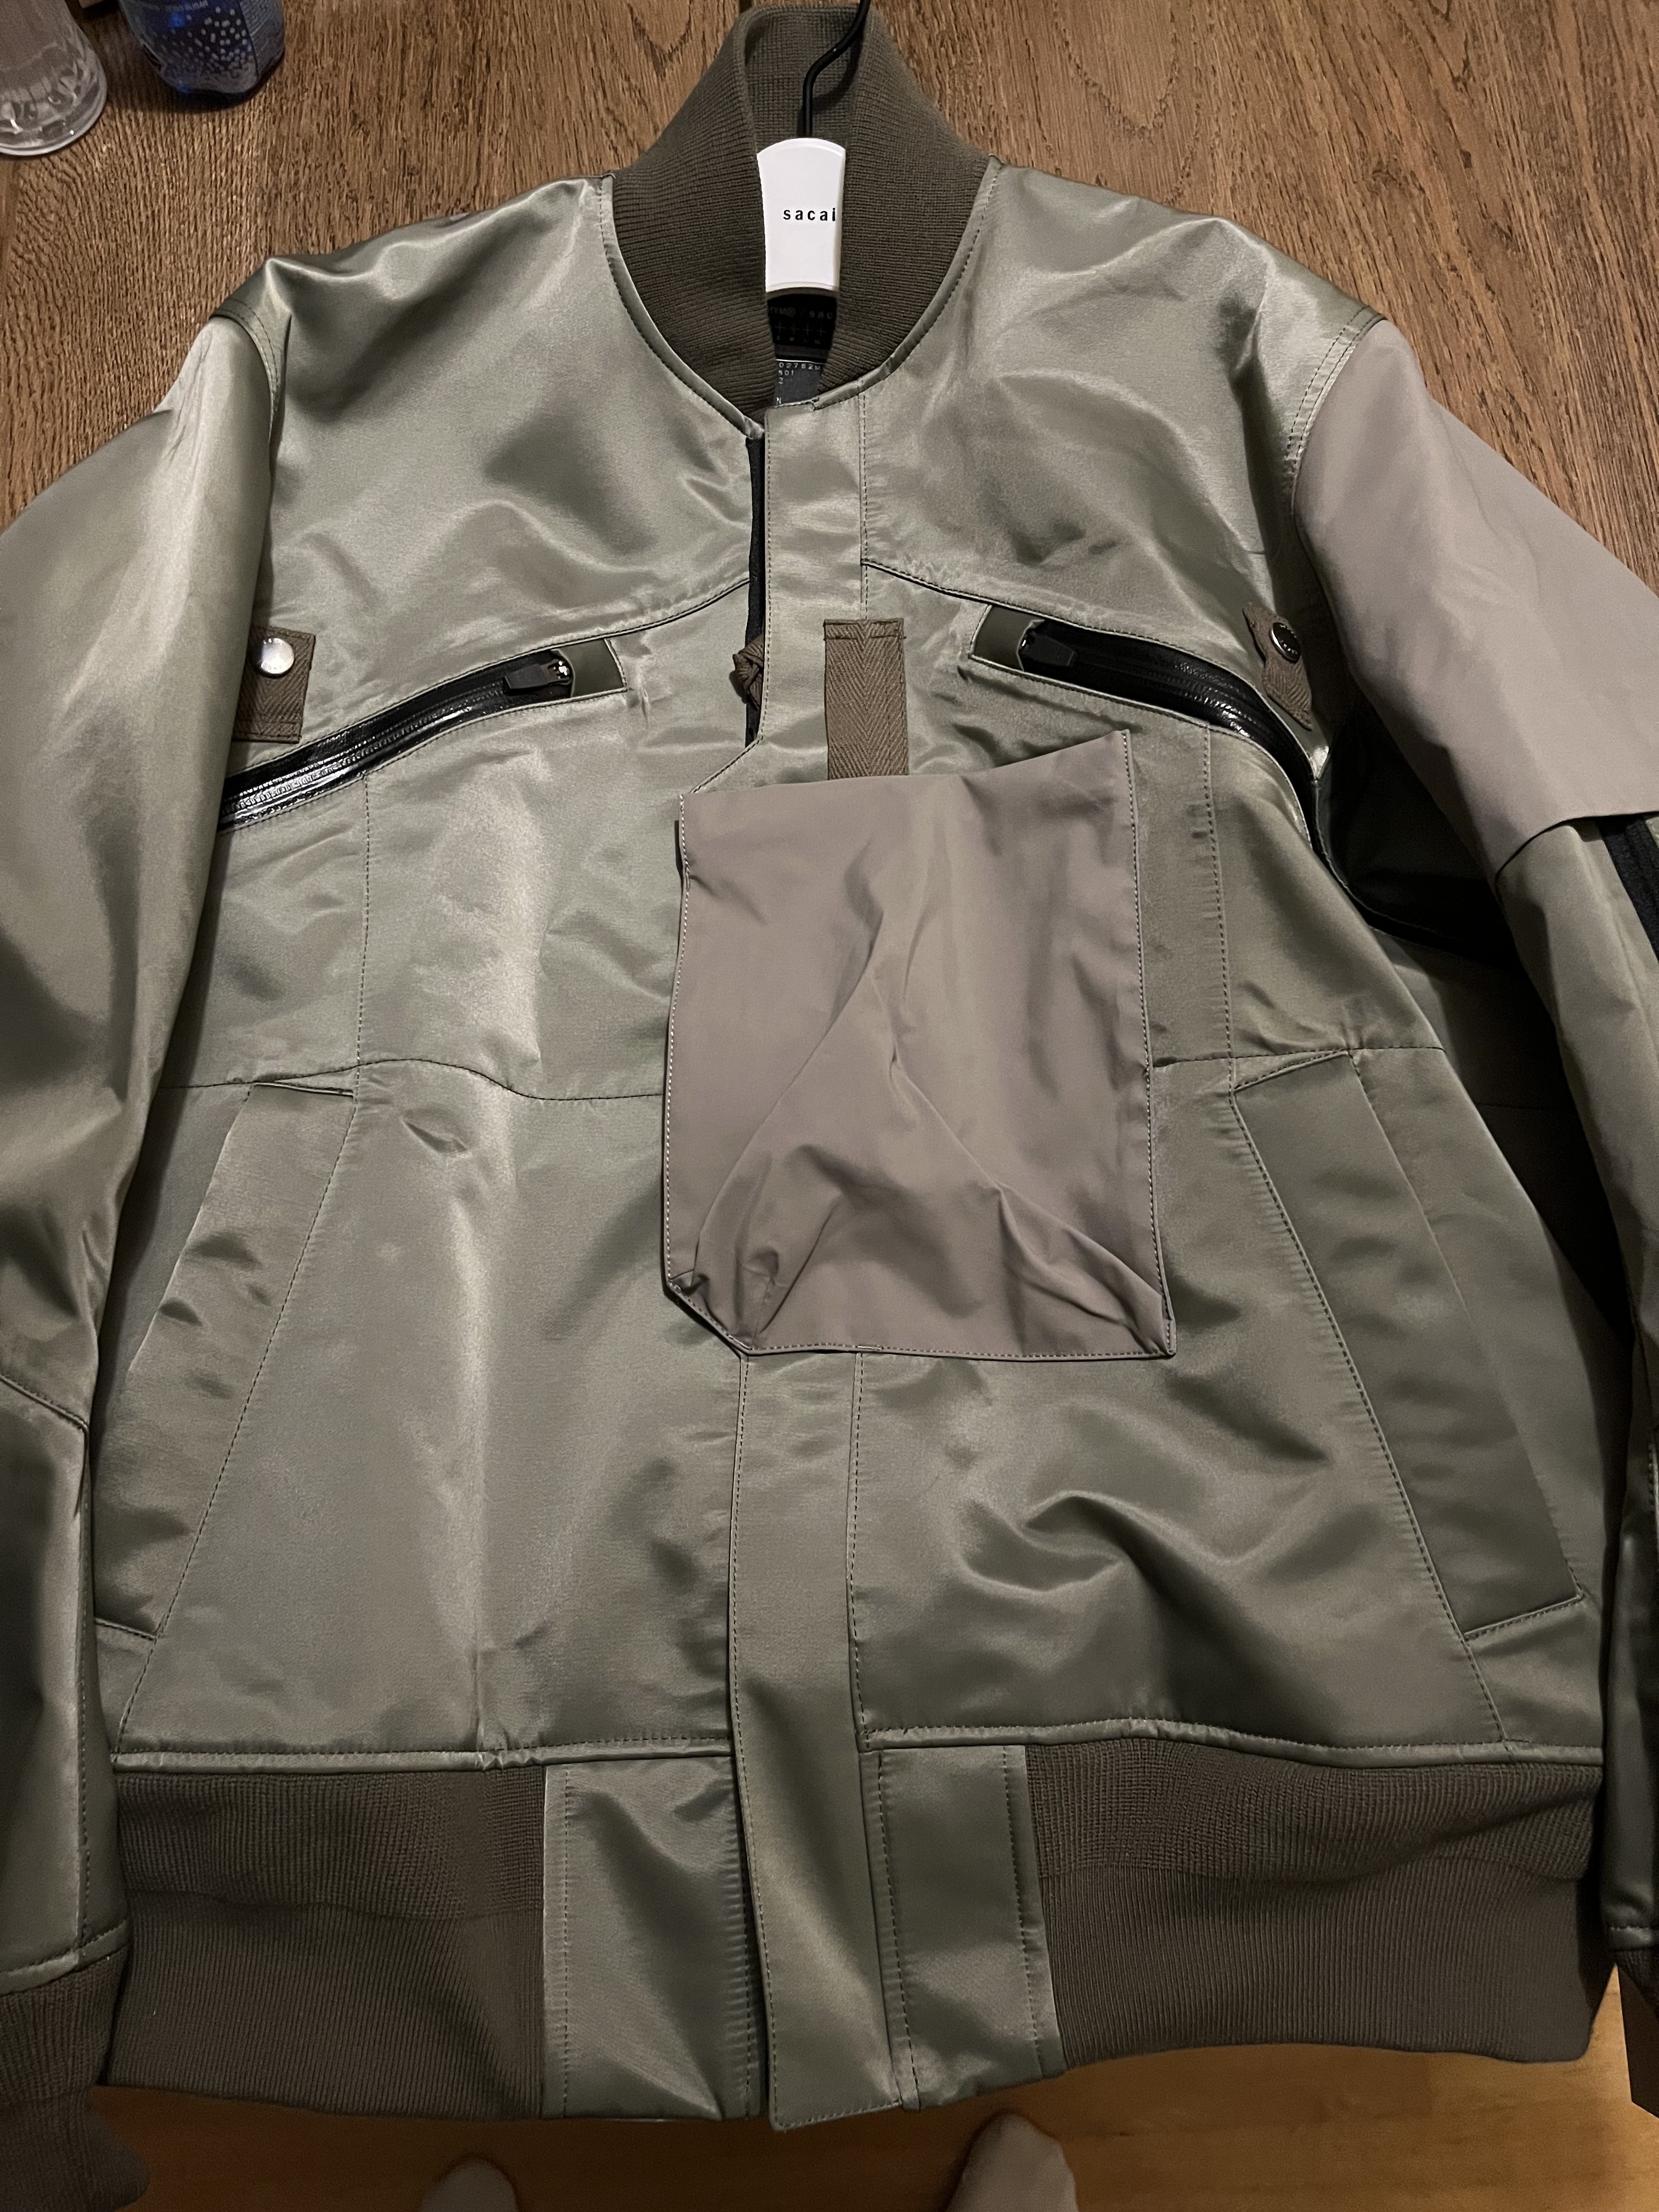 Acronym x sacai bomber jacket SAC-J2762 green size S - 1